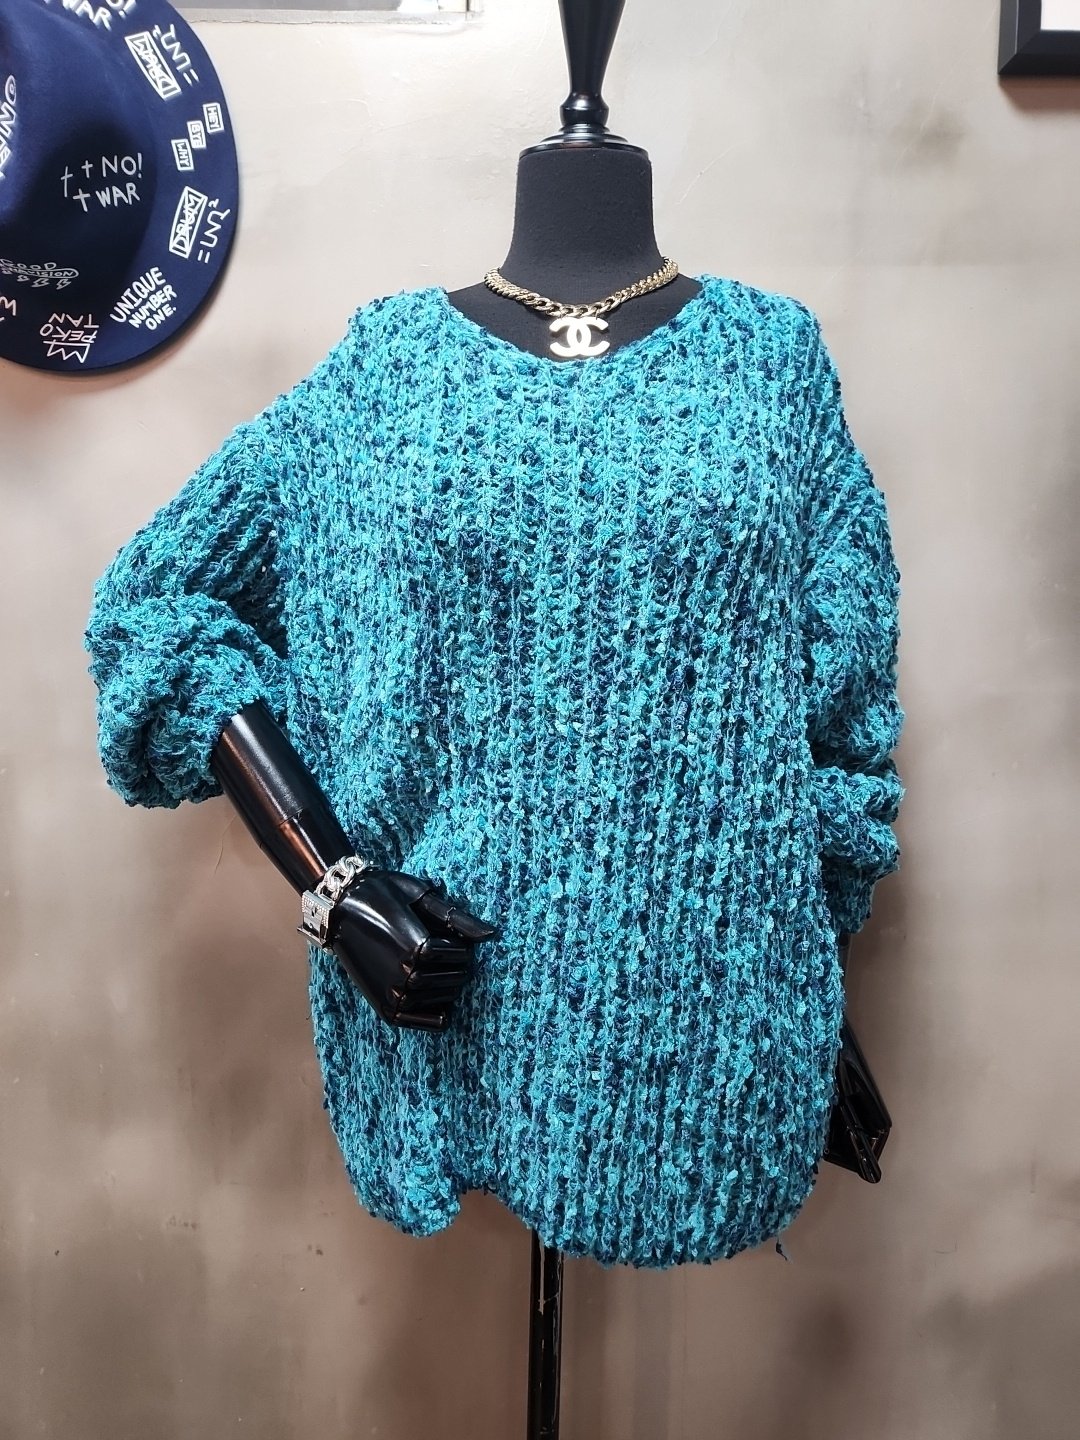 페이번nt 부드러운 여리핏 팝콘 브이넥 겨울 니트 스웨터 티셔츠 3color